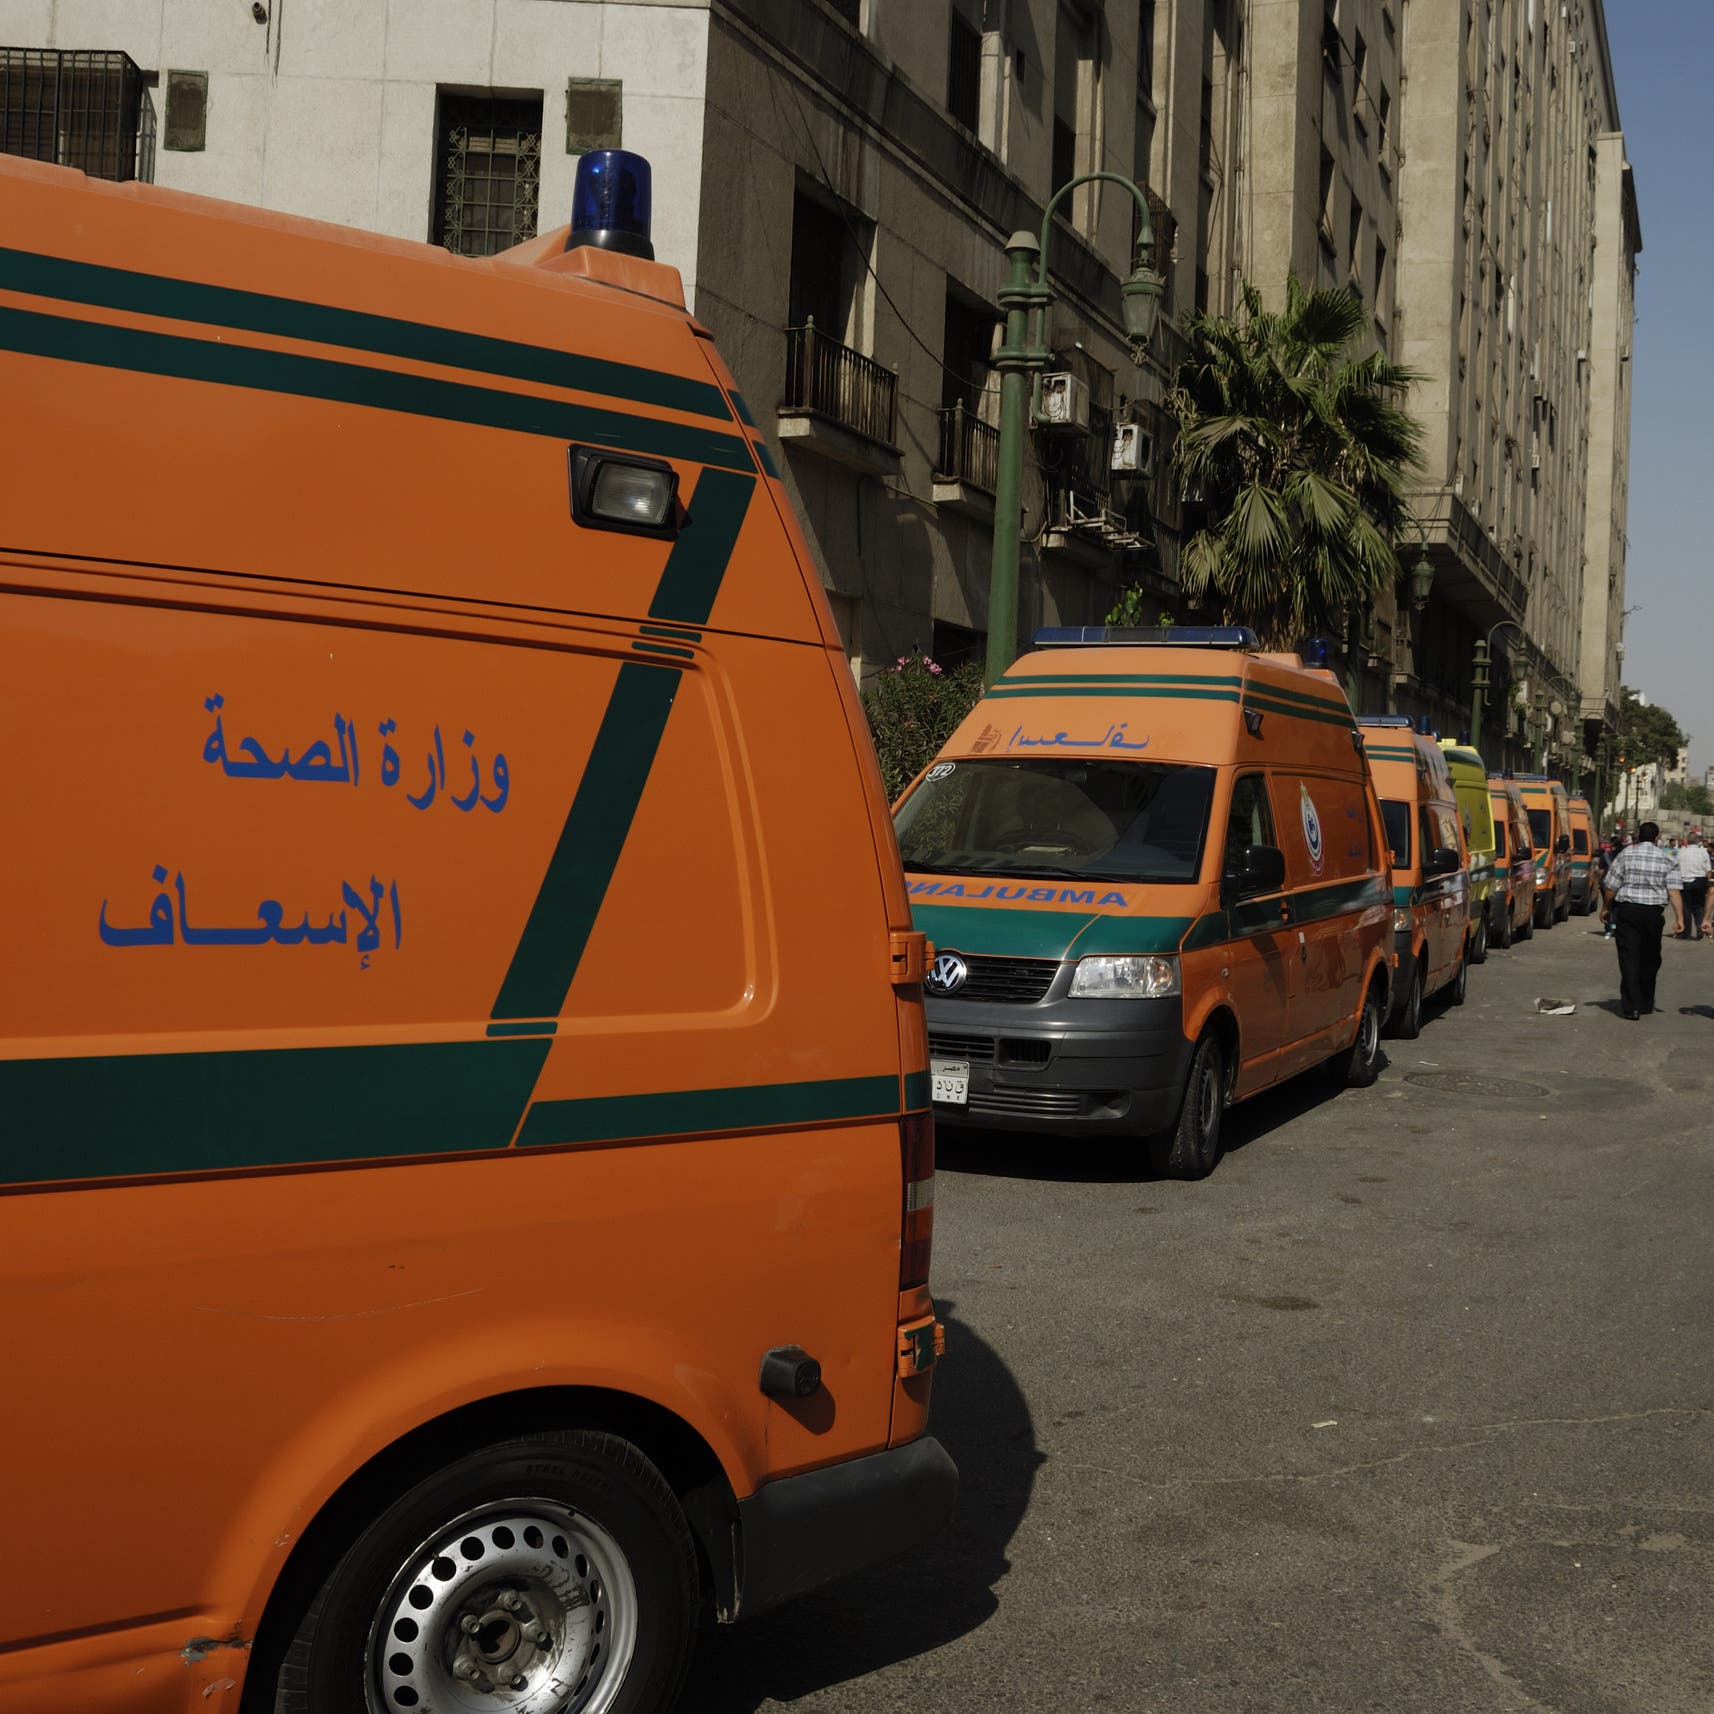 وفاة فتاة عمرها 12 عاماً في صعيد مصر نتيجة الختان